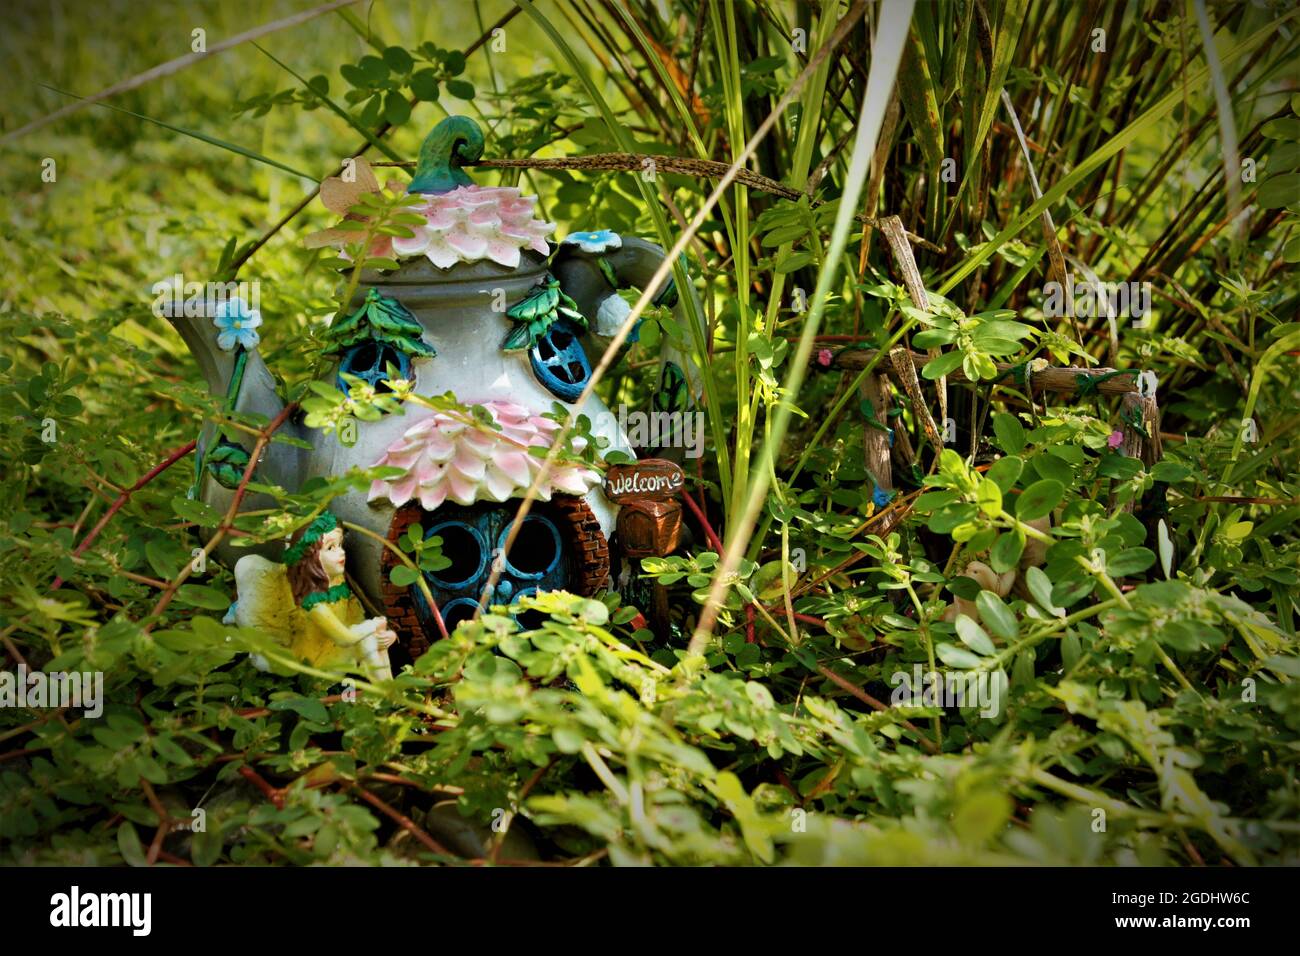 Tea Pot Fairy House con un cartello di benvenuto in un giardino naturale di roccia adornato da spurge macchiato Foto Stock